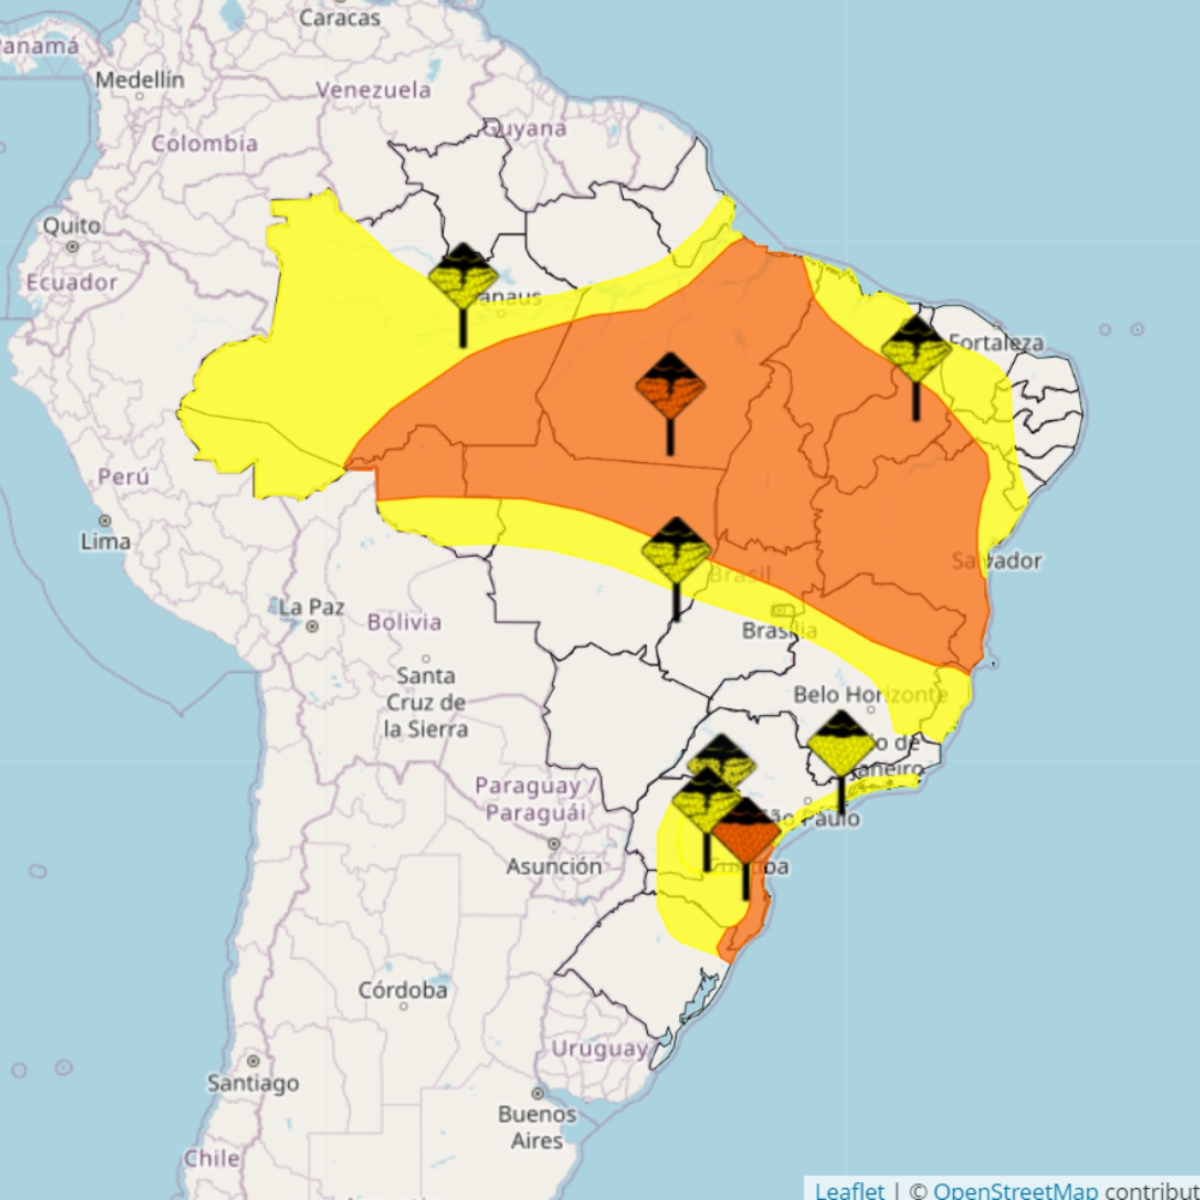  mapa do inmet mostrando áreas de perigo para tempestades e chuvas no Brasil 